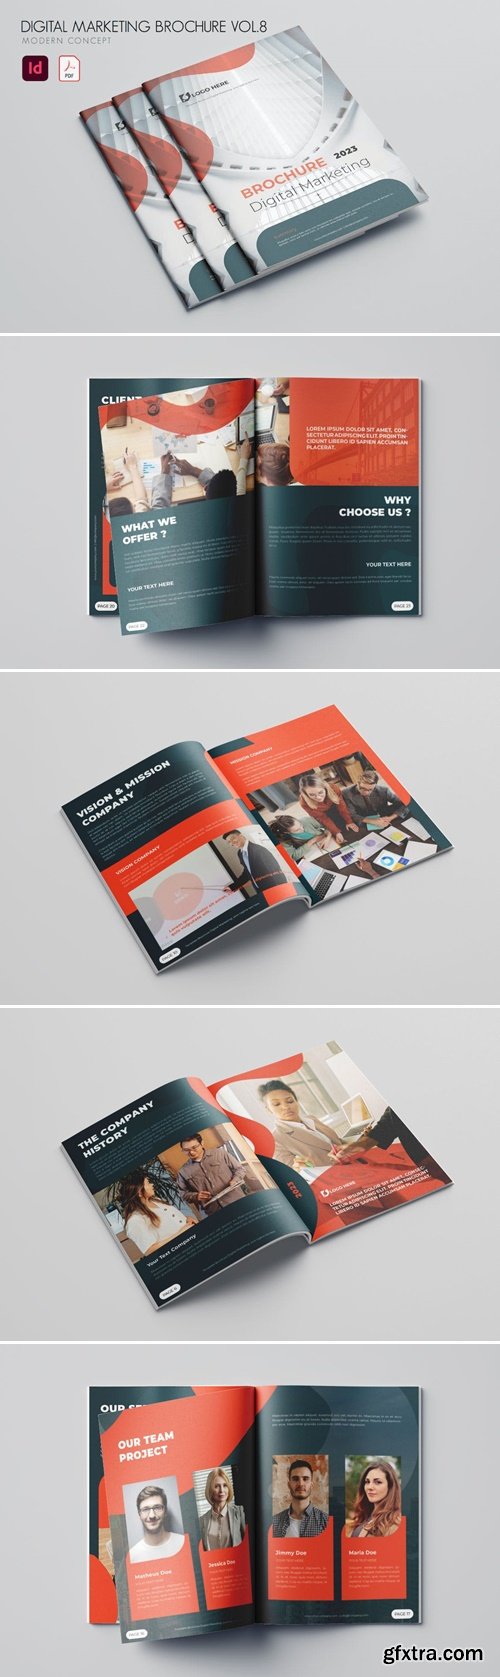 Digital Marketing Brochure Vol.8 BJLUXRZ